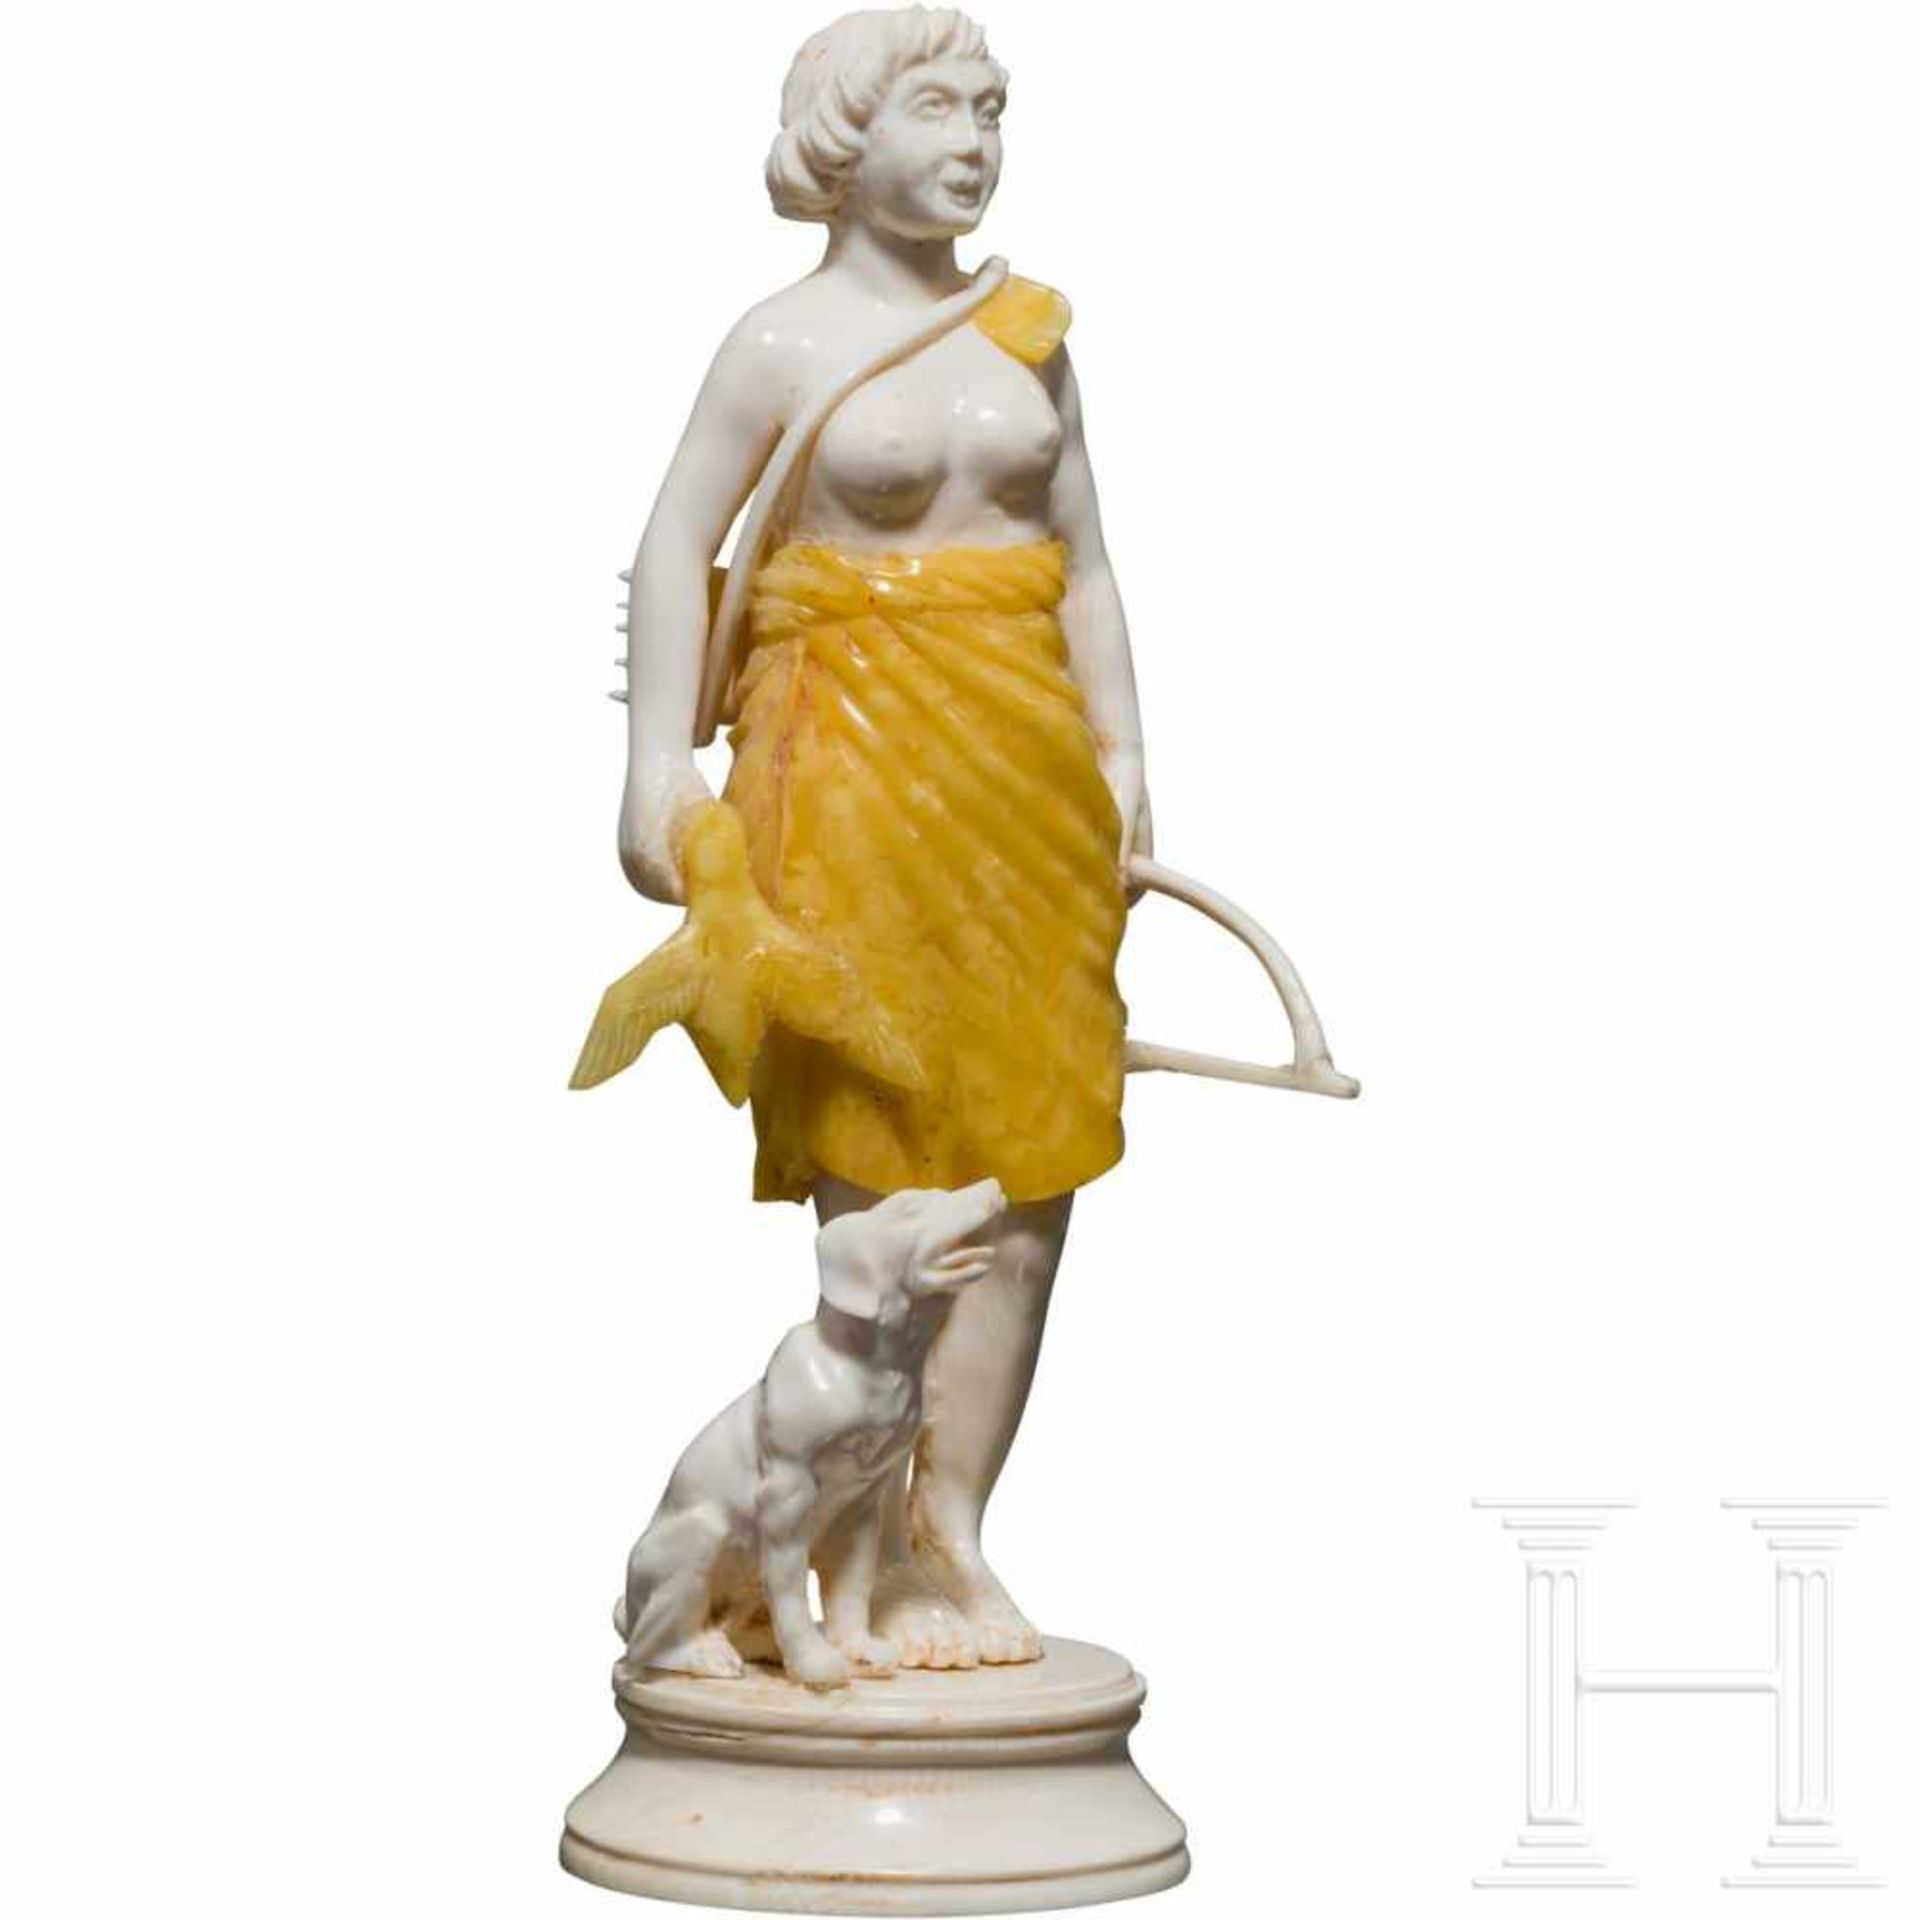 A German ivory figure of Diana, 20th centuryFein beschnitzte Figur der Jagdgöttin aus Elfenbein